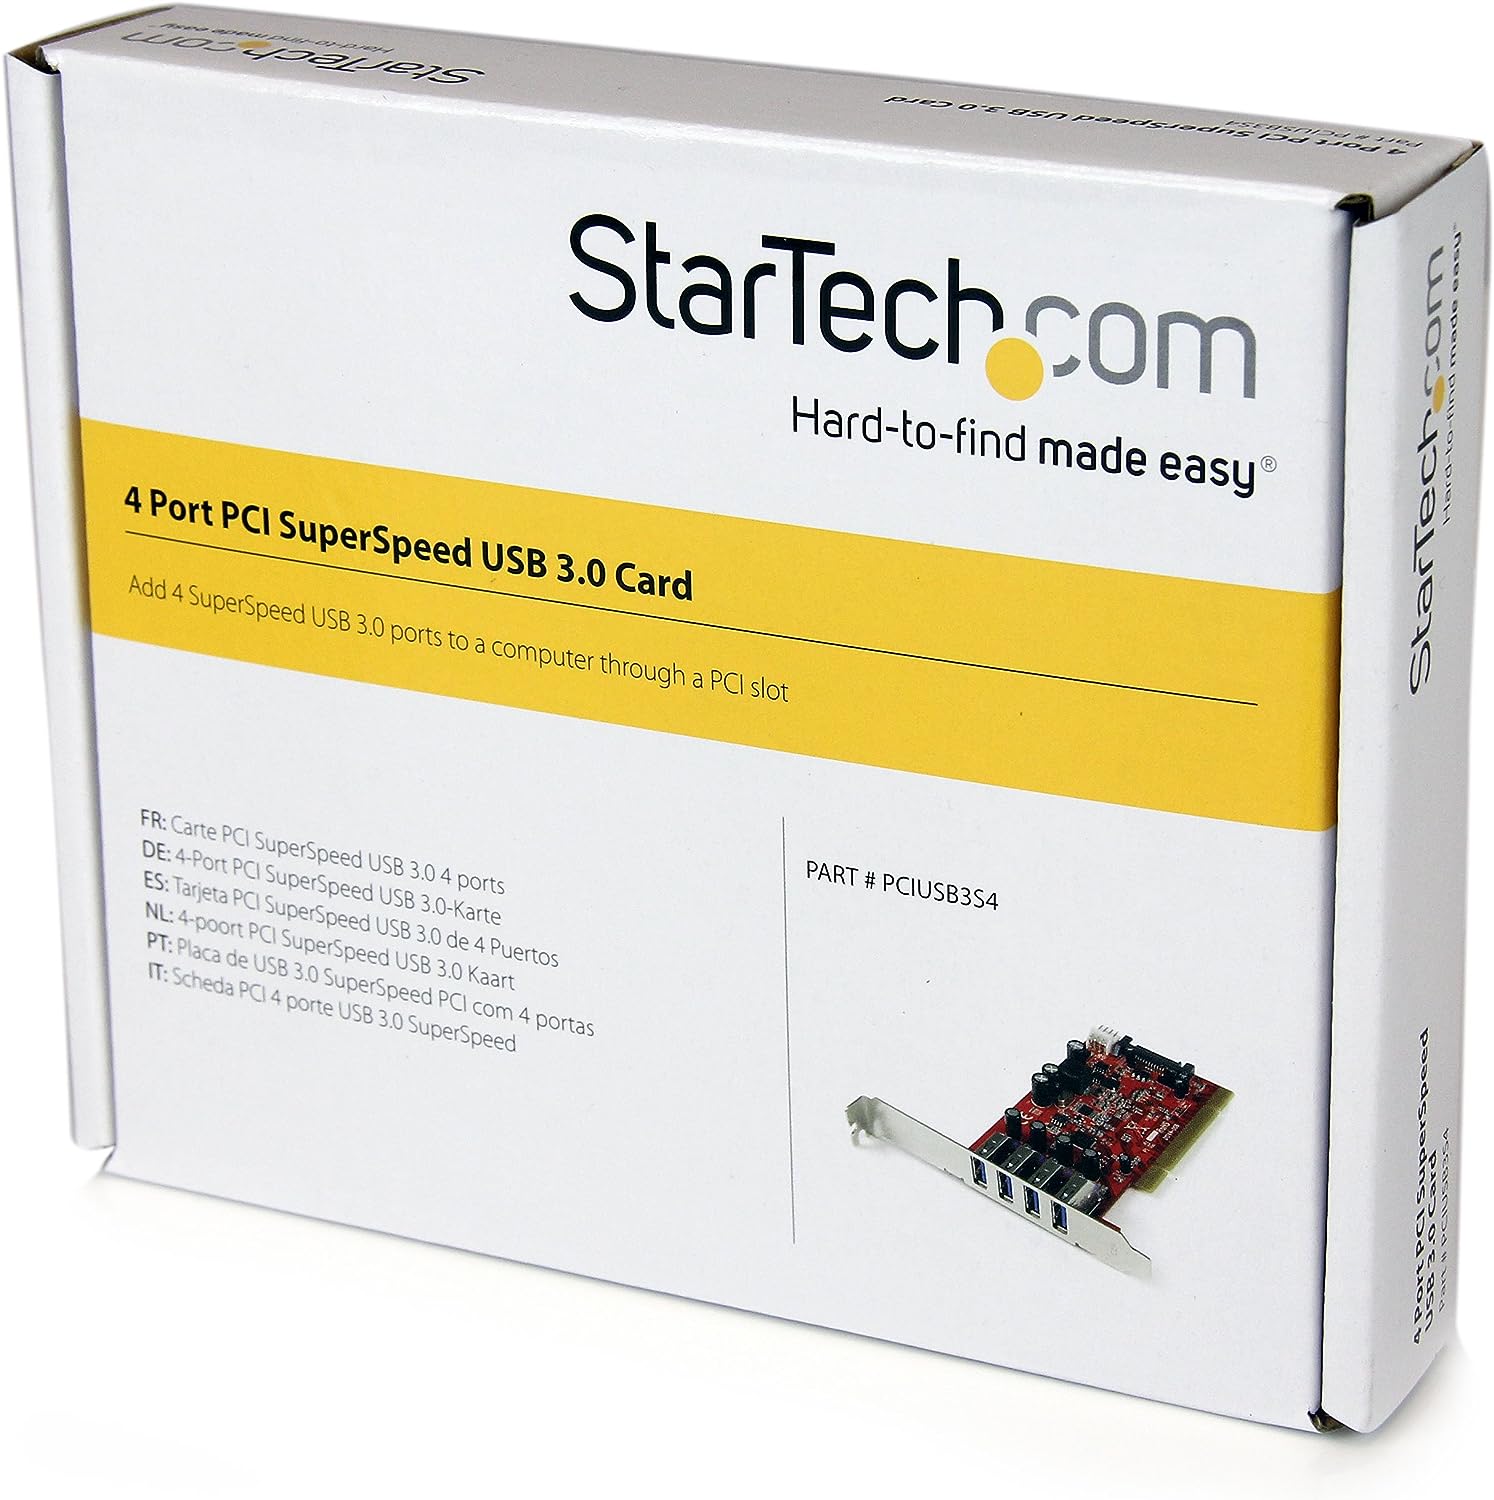 StarTech.com 4 Port PCI SuperSpeed USB 3.0 Adapter Card